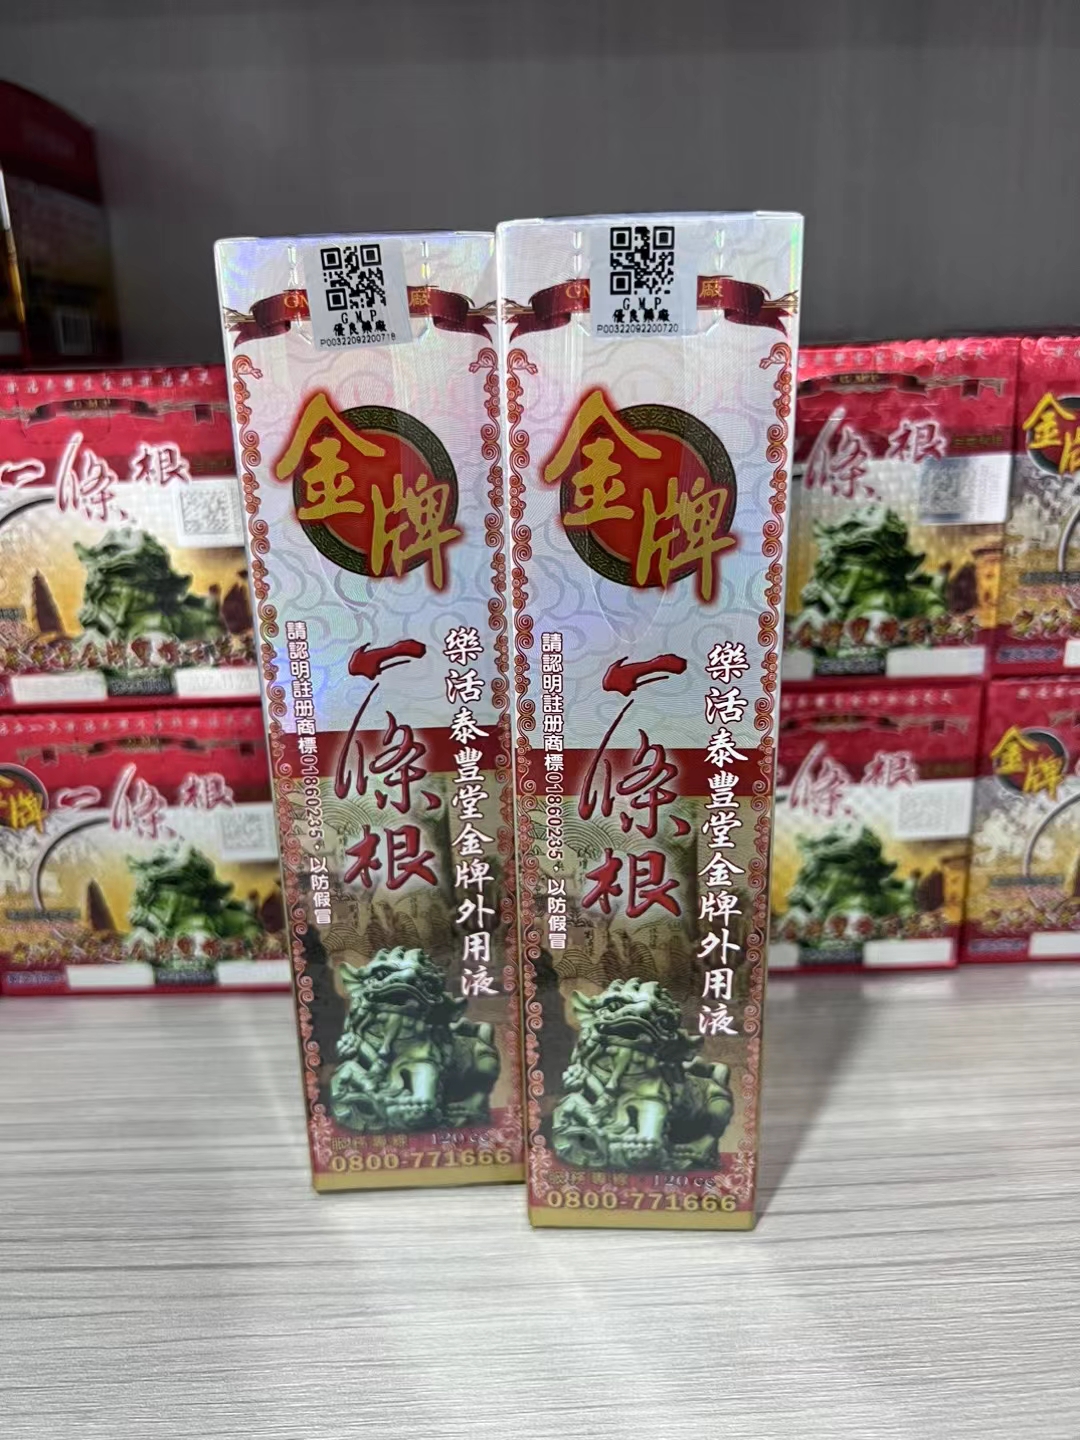 中国台湾金牌一条根强力喷剂一条根活络液一条筋外用液原装正品